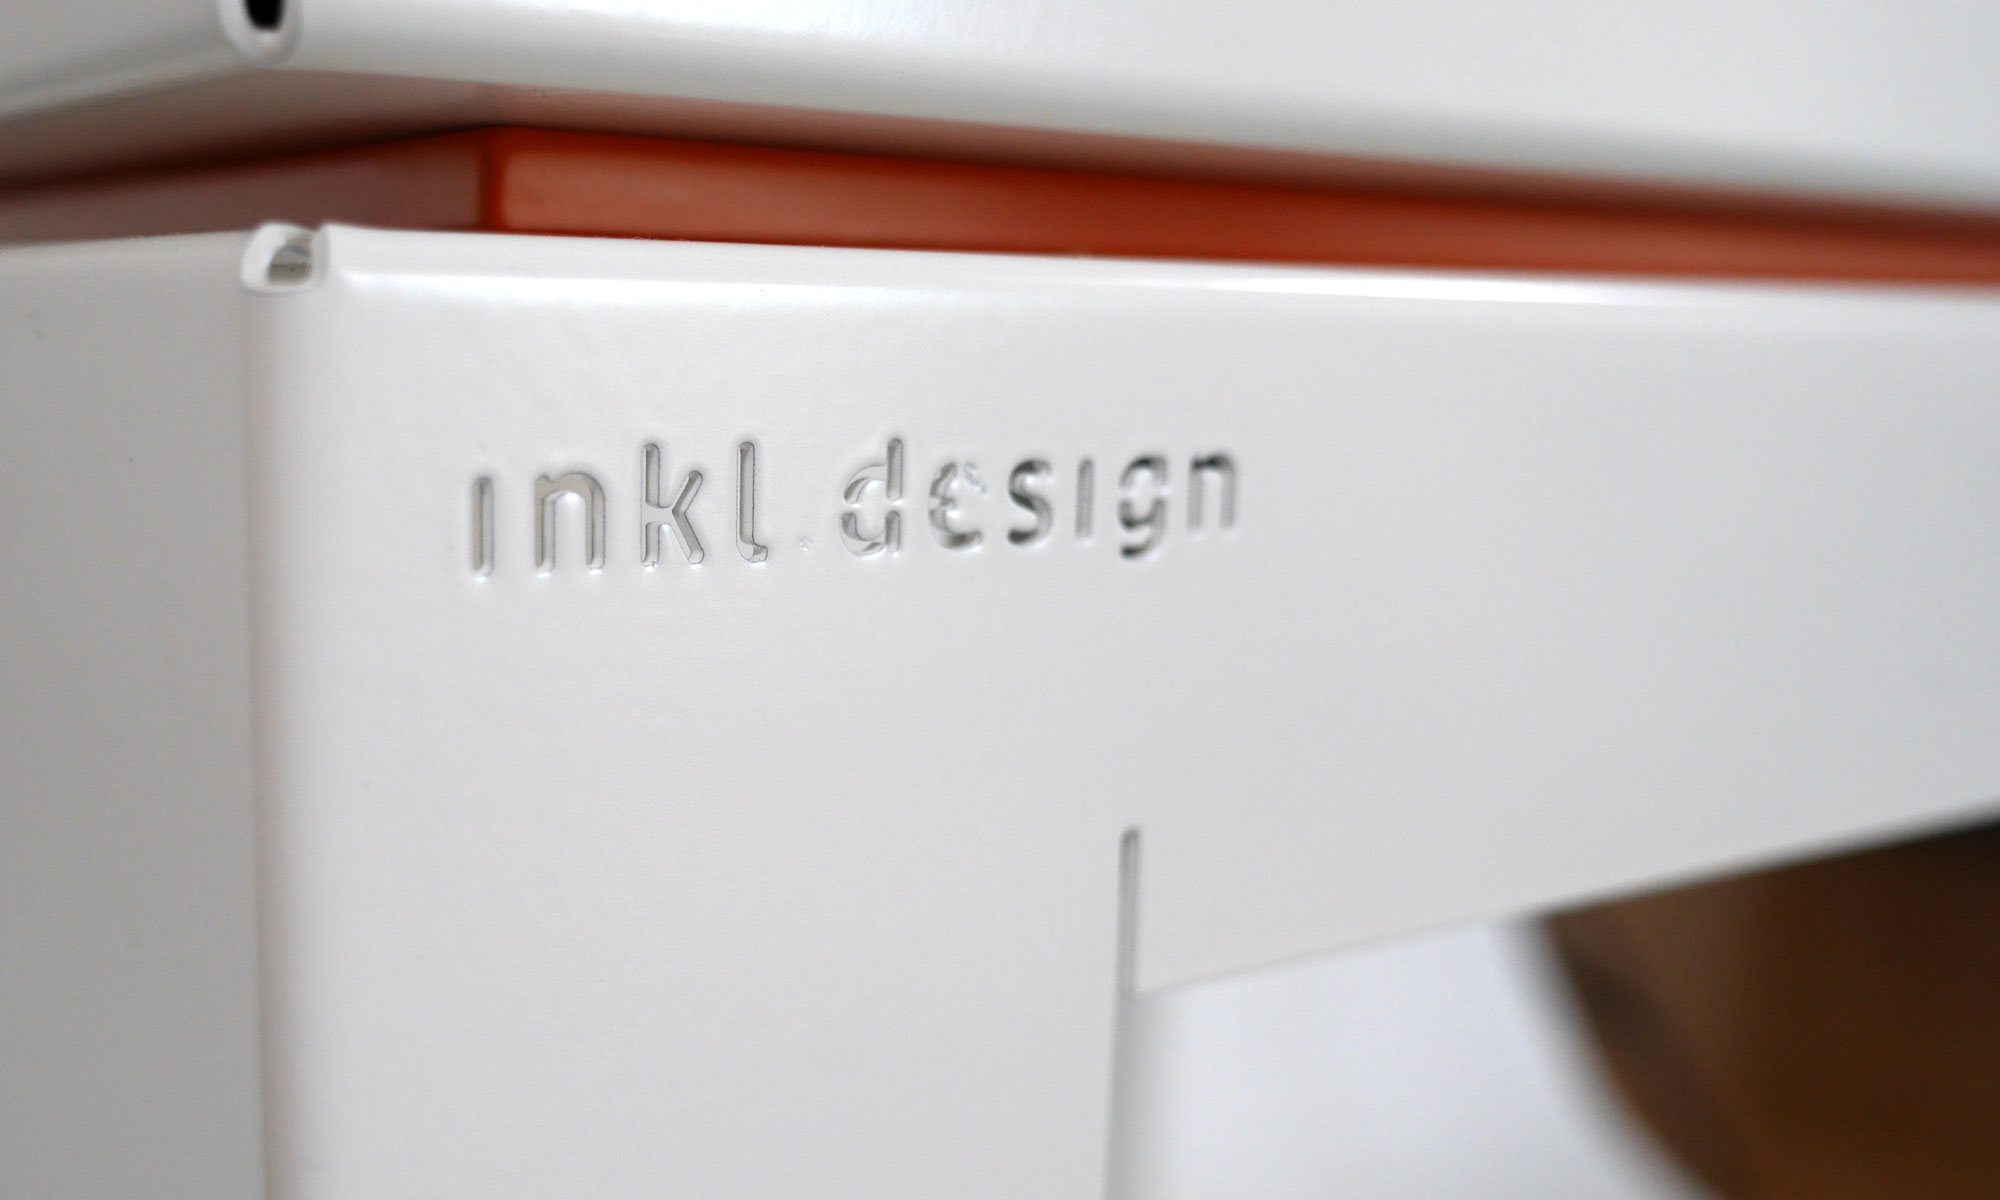 Detailaufnahme der Gravur „inkl. design“ auf dem weißen Tisch, der das Modell trägt.